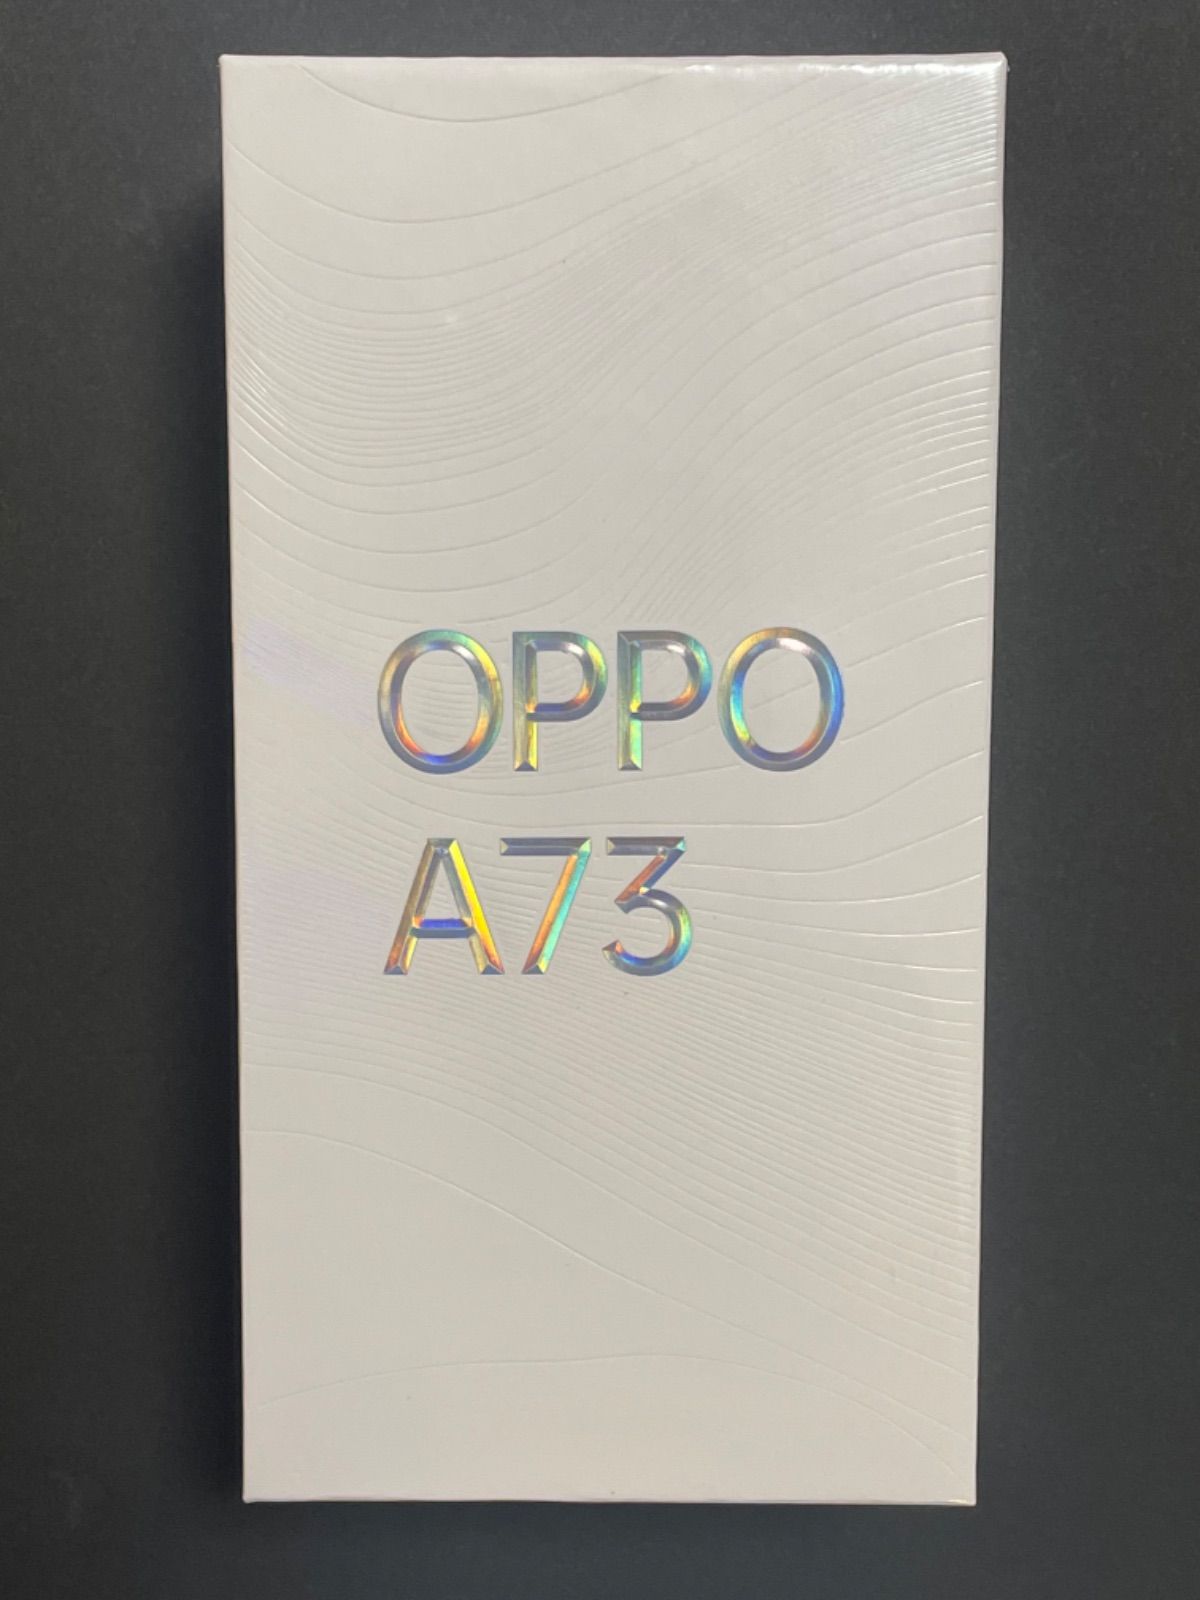 メルカリShops - 【新品未開封】OPPO A73 ダイナミックオレンジ SIMフリー